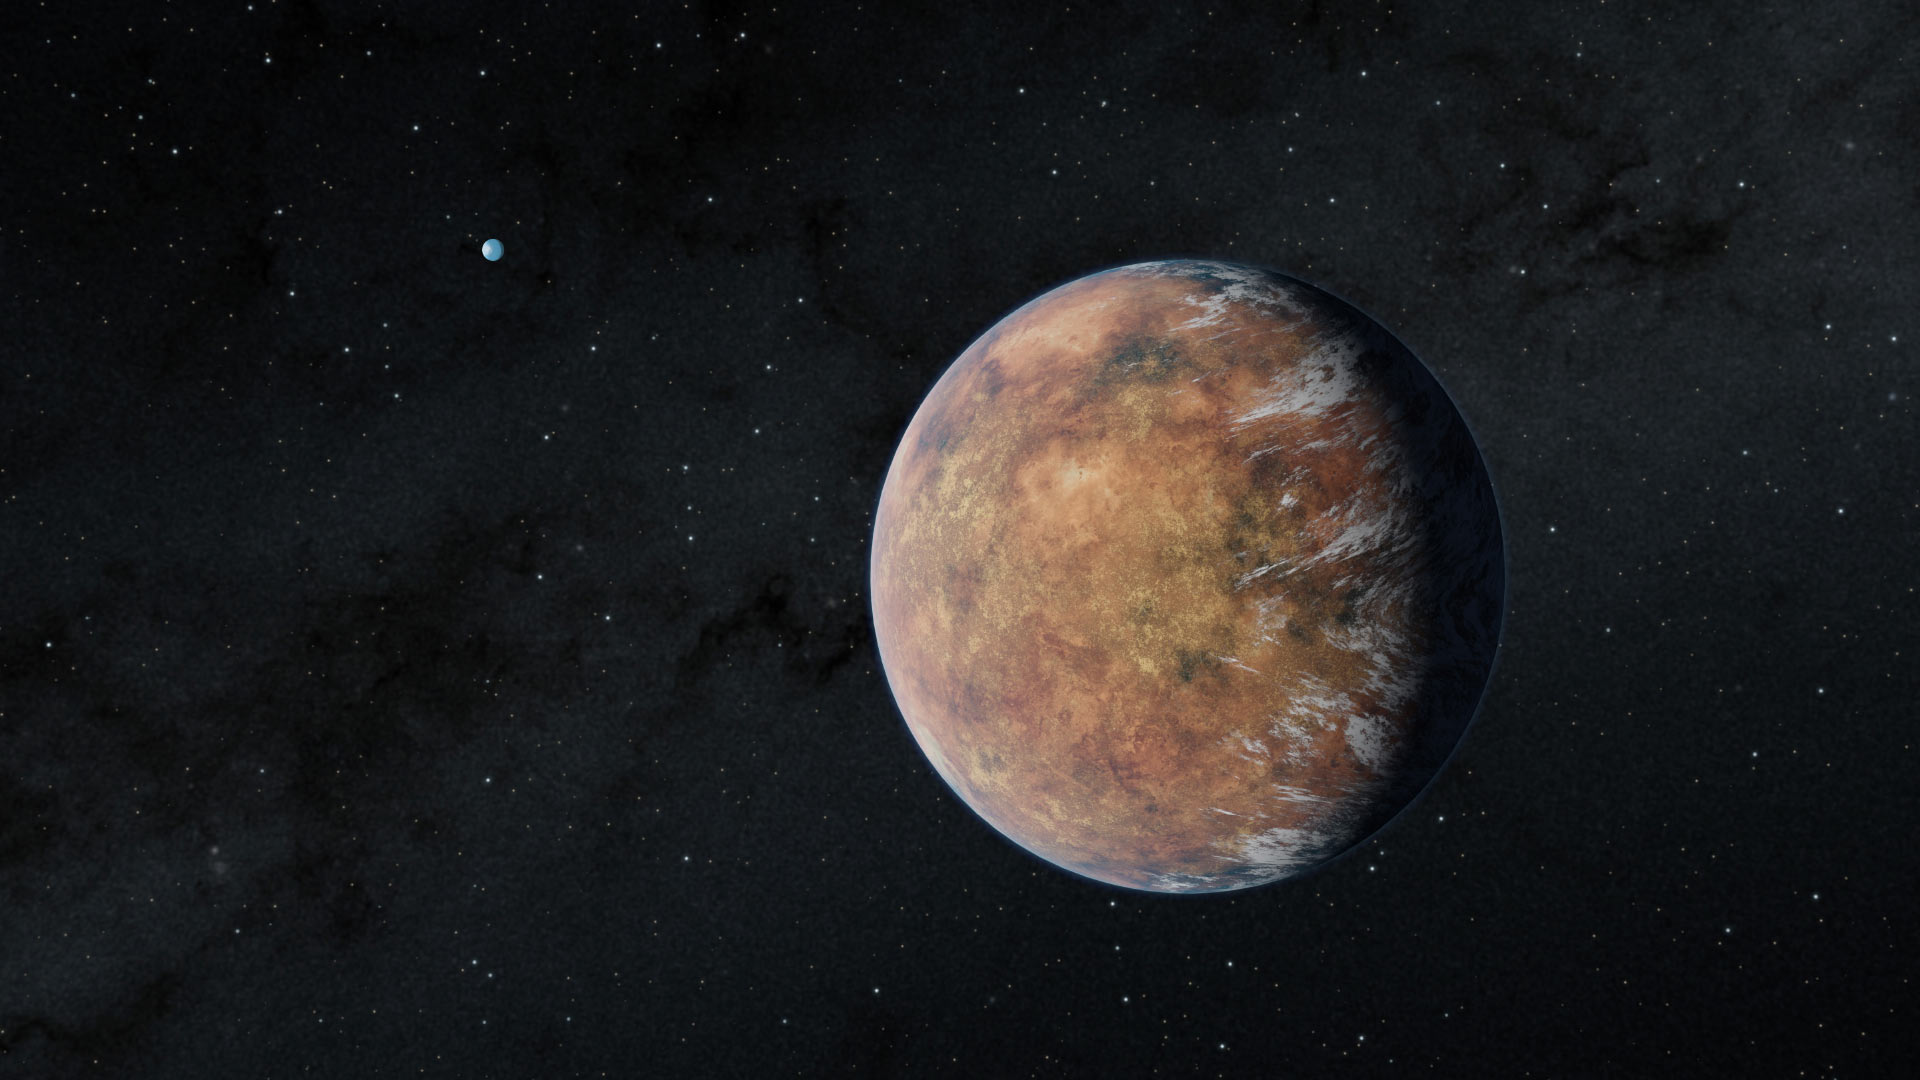 Telescopio espacial TESS encuentra exoplaneta similar a la Tierra y en la zona habitable